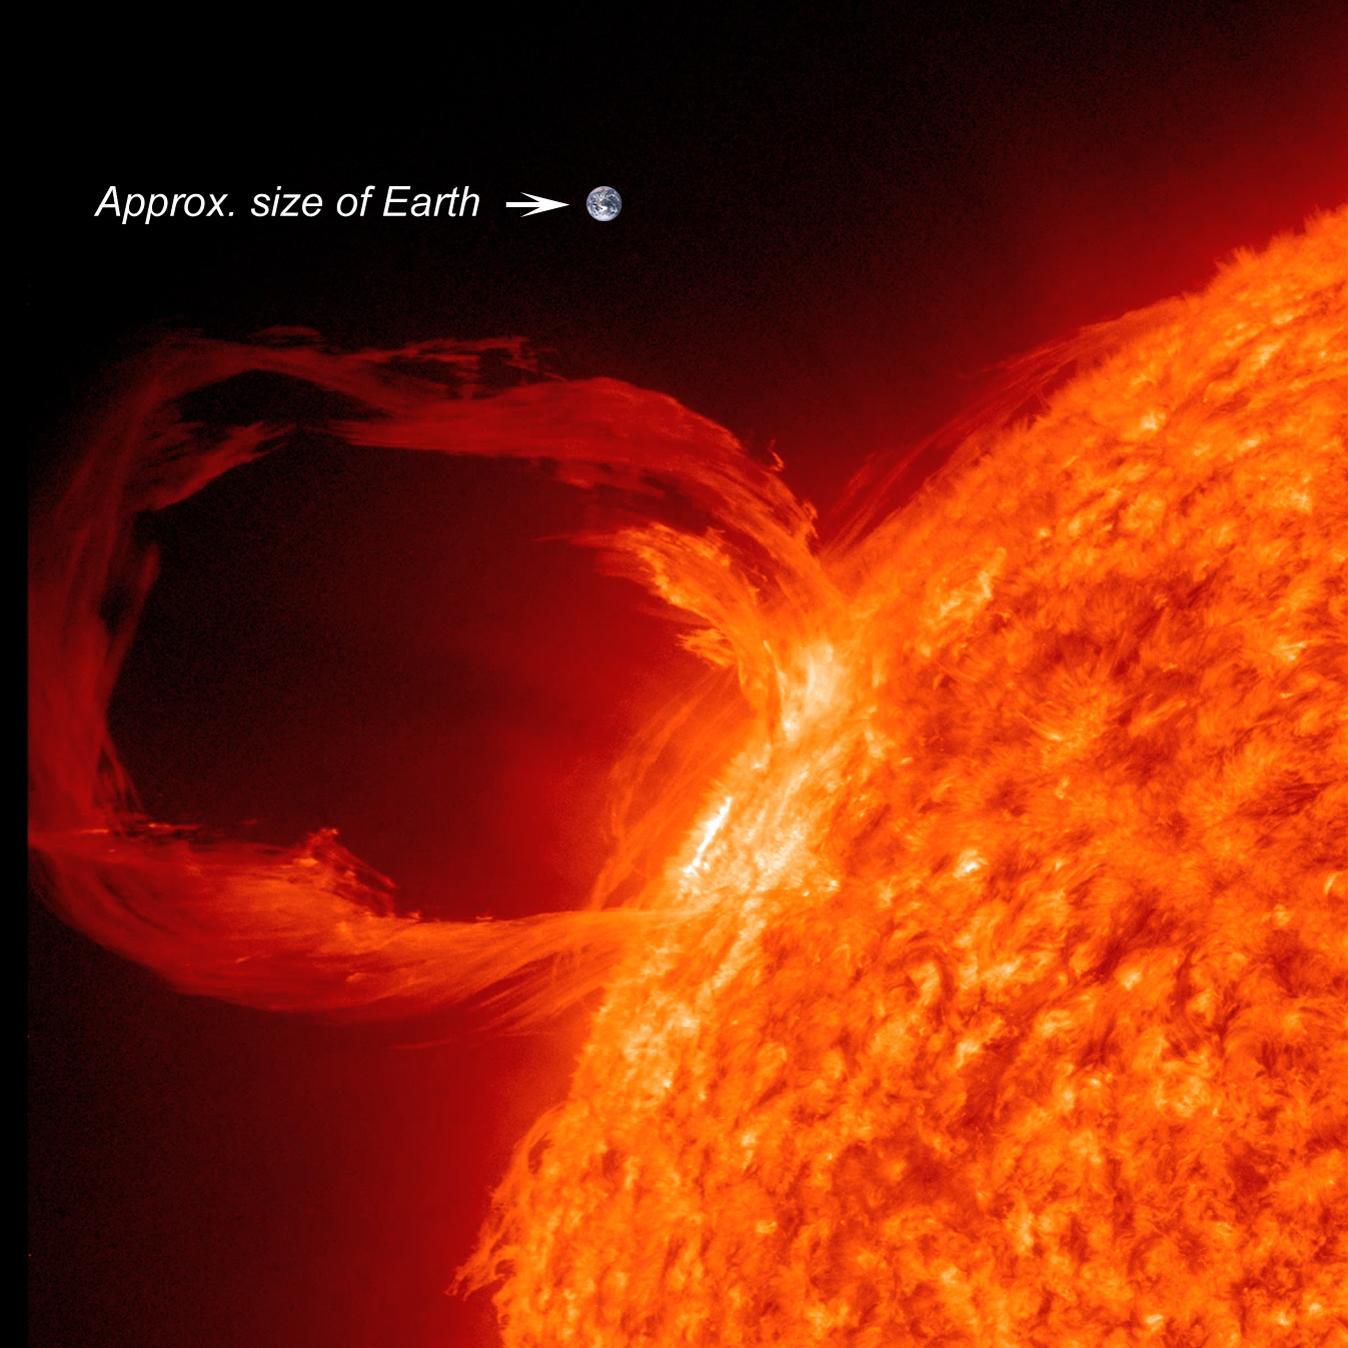 Một tai lửa mặt trời khổng lồ và kích cỡ thật lớn so với Trái đất nhỏ bé của chúng ta